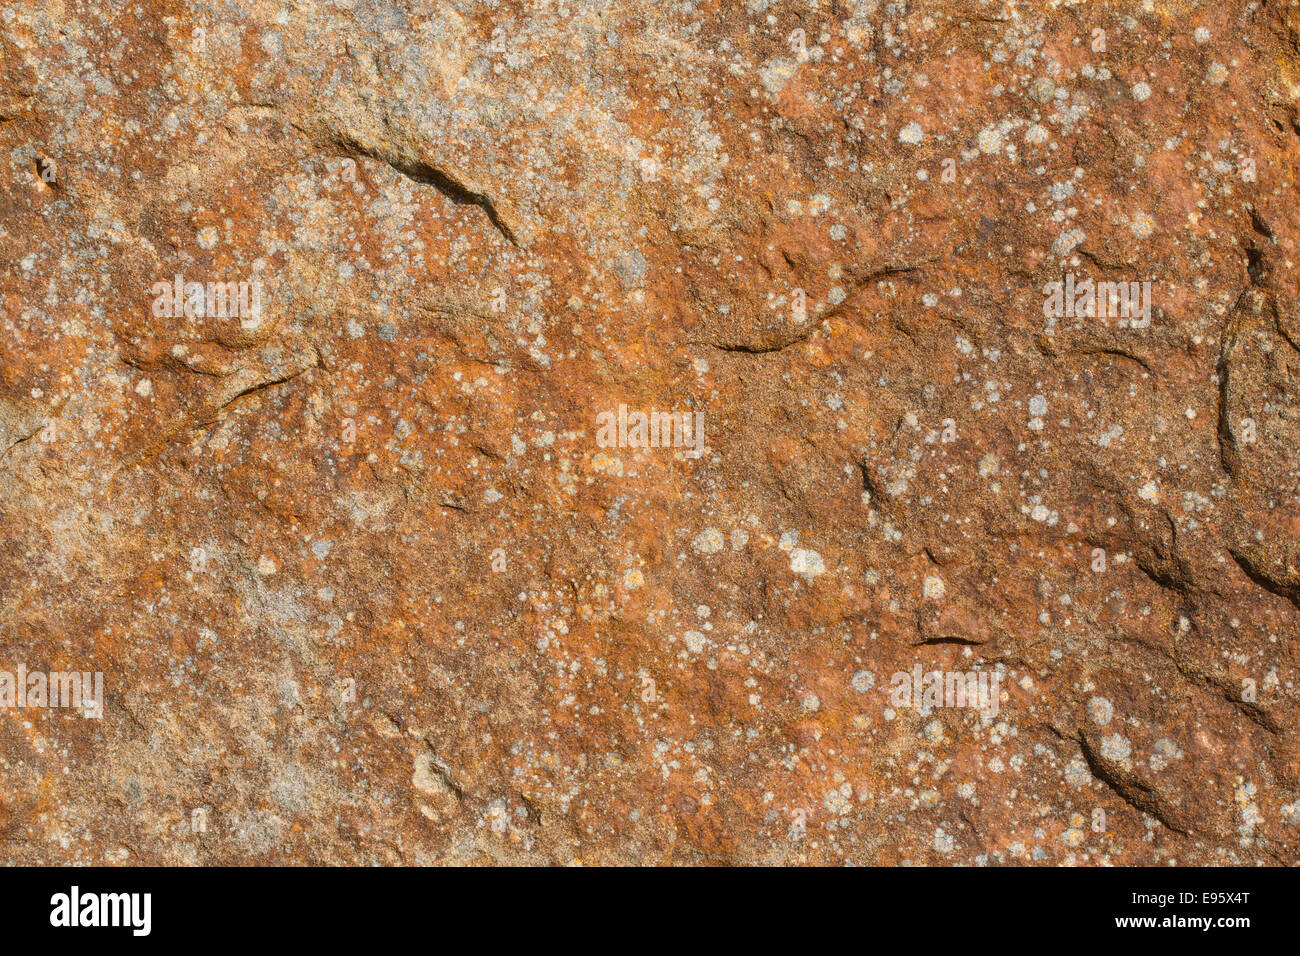 Cara de la roca del fondo con color rojo oxidado y manchas de líquenes Foto de stock